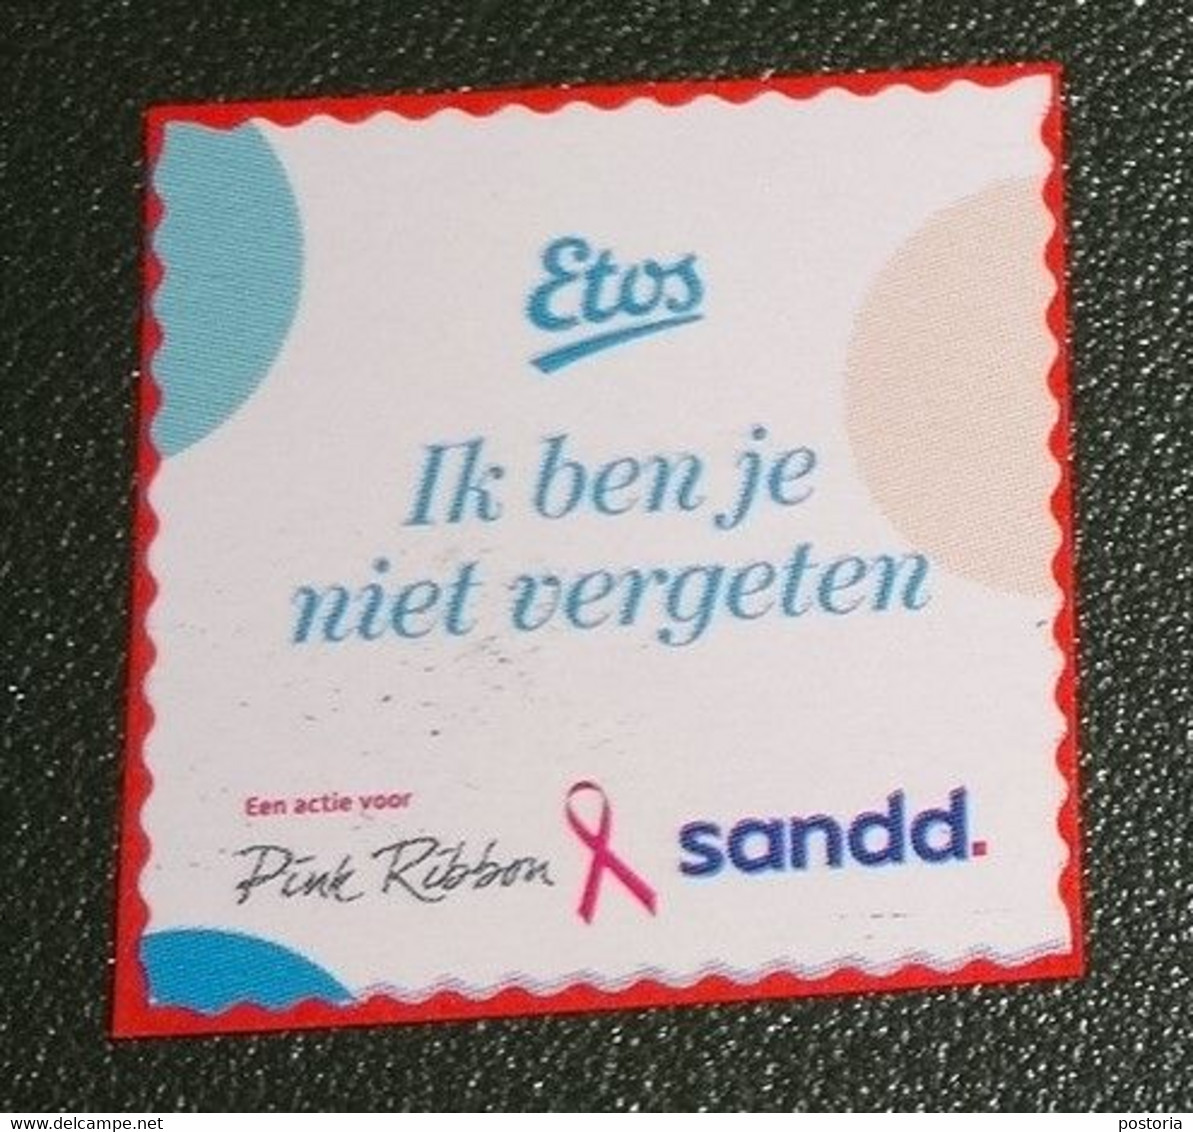 Nederland - Sandd - Gebruikt Onafgeweekt - Cancelled On Paper - Etos - Ik Ben Je Niet Vergeten - Ribbon - Gebruikt